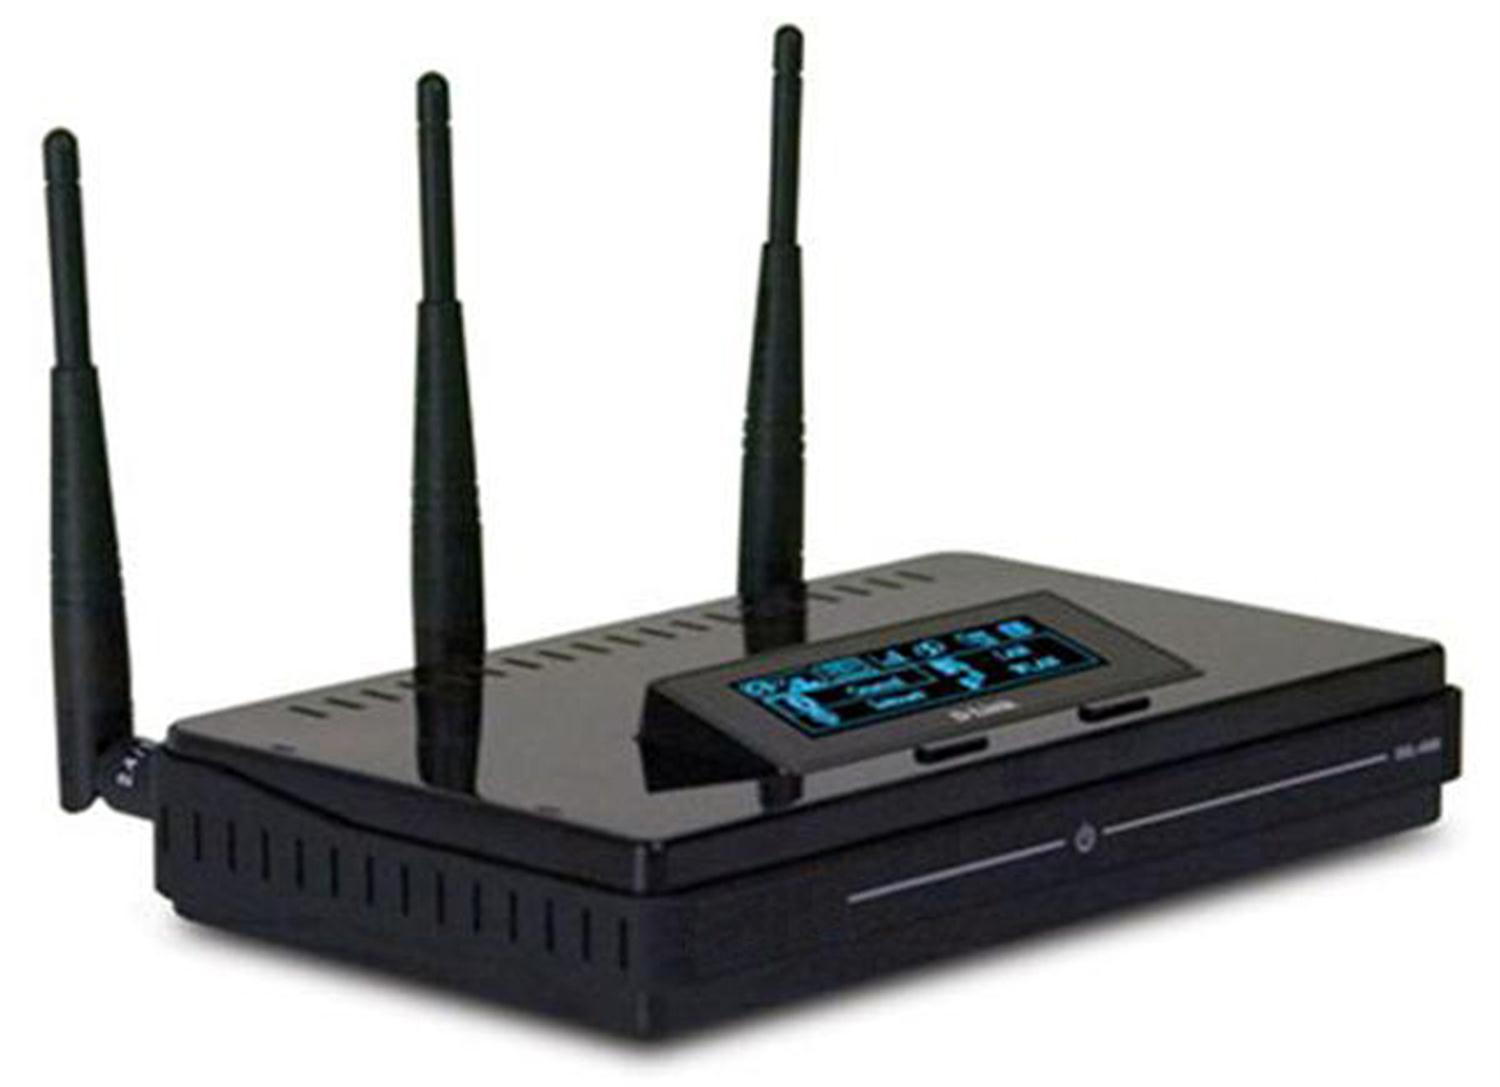 DGL-4500 D-Link Xtreme N Gaming Router 4 x 10/100/1000Base-TX LAN, 1 x 10/100/1000Base-TX WAN (Refurbished)